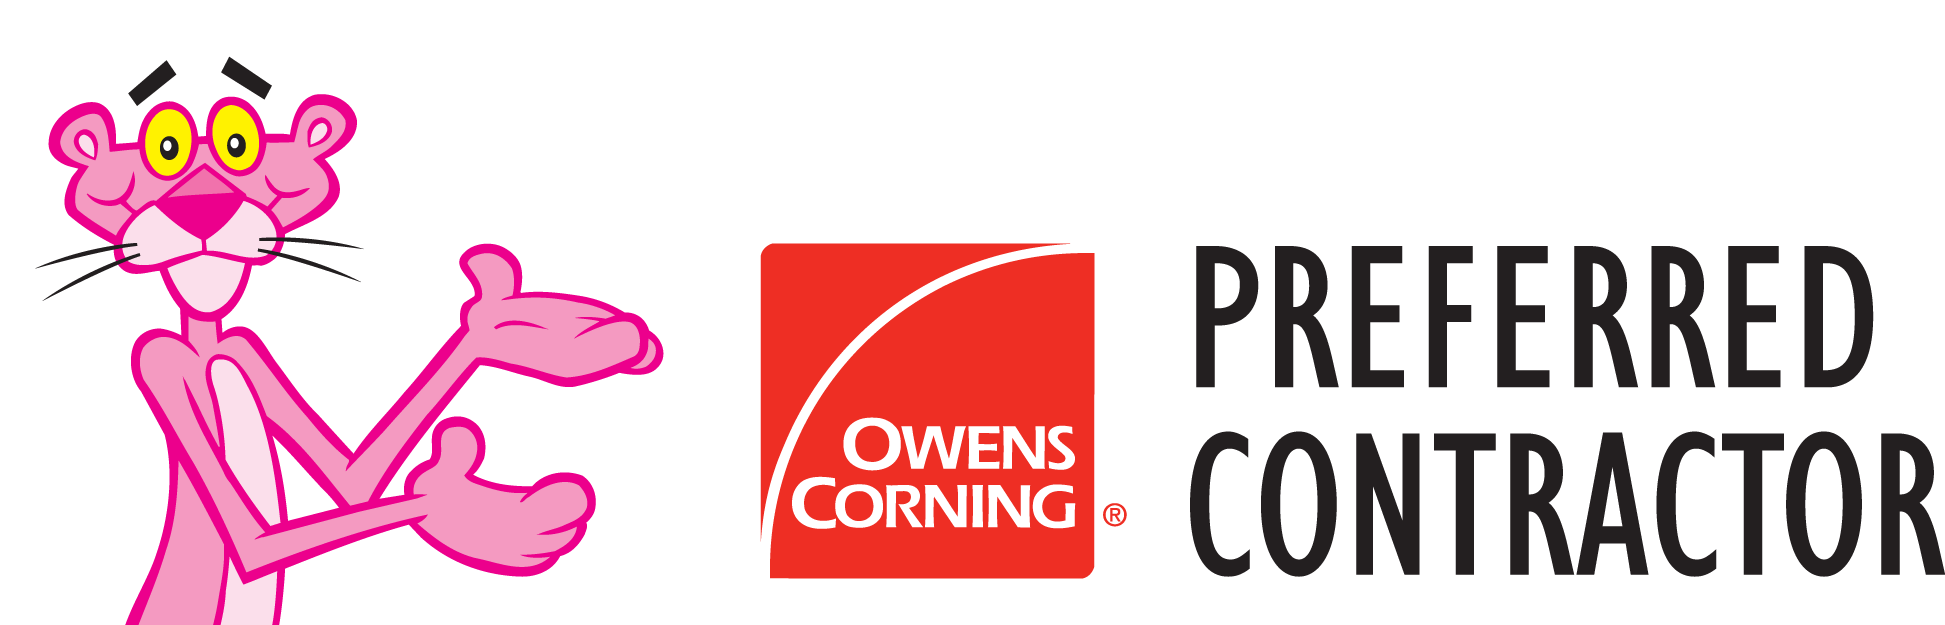 owens preferred contractor